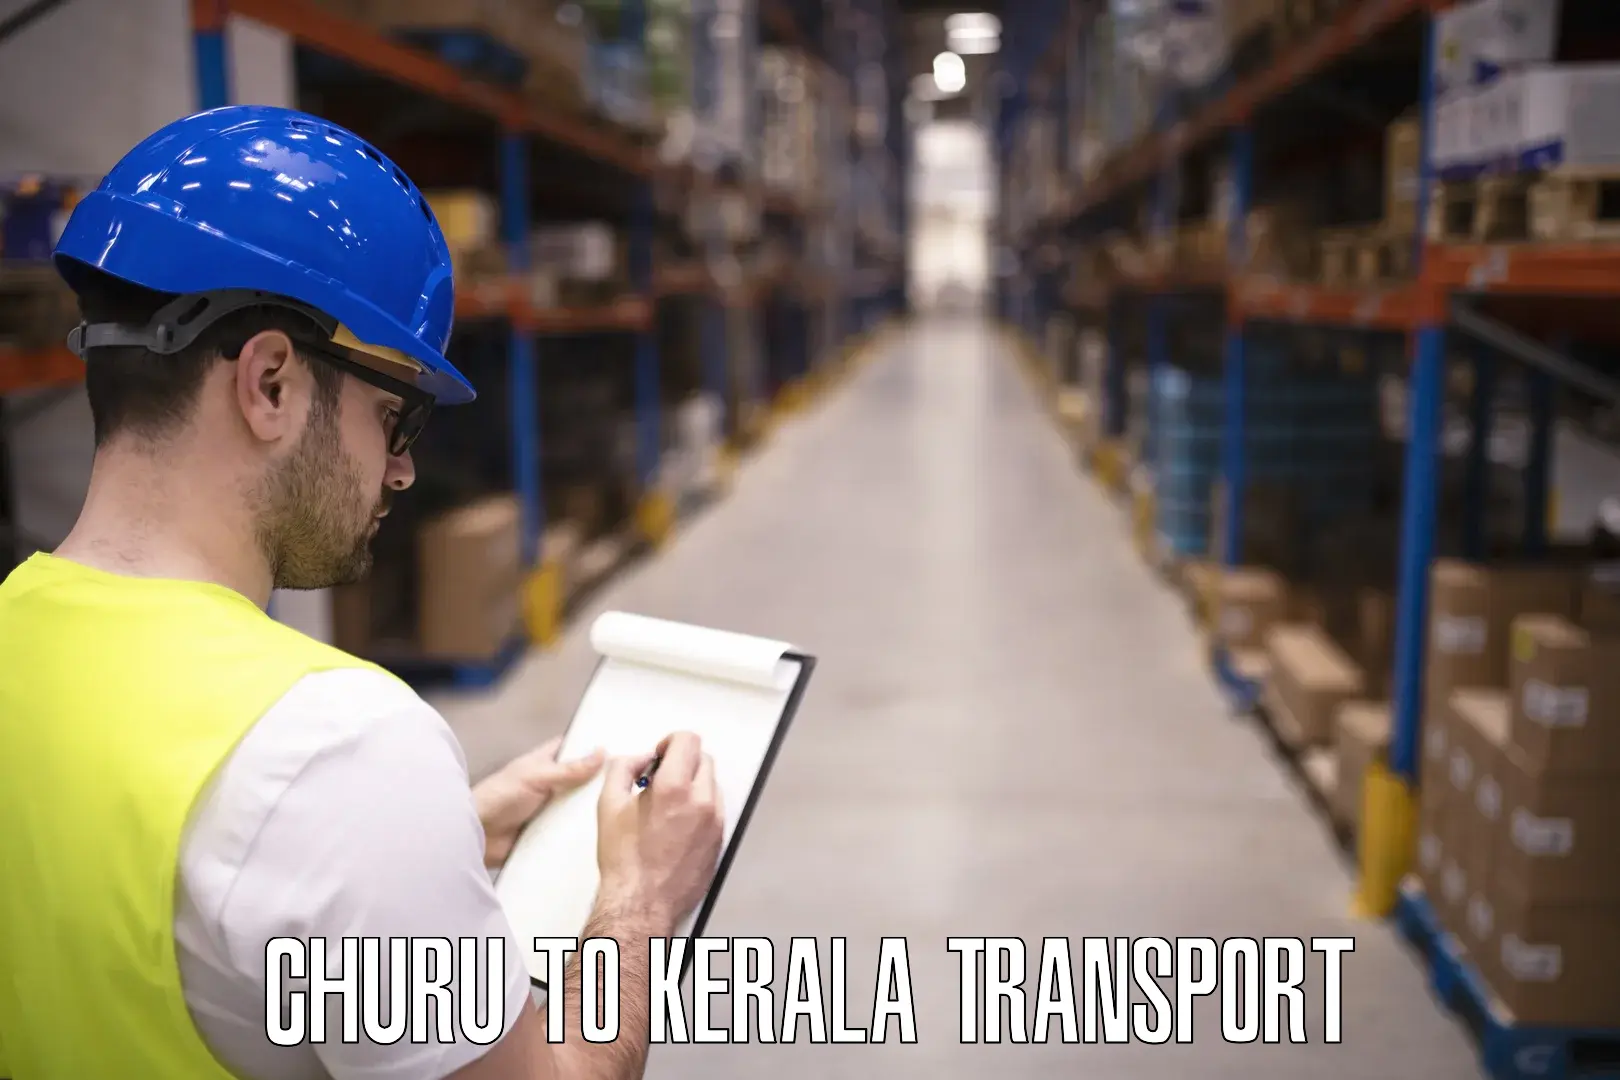 Cargo transport services Churu to Thrissur